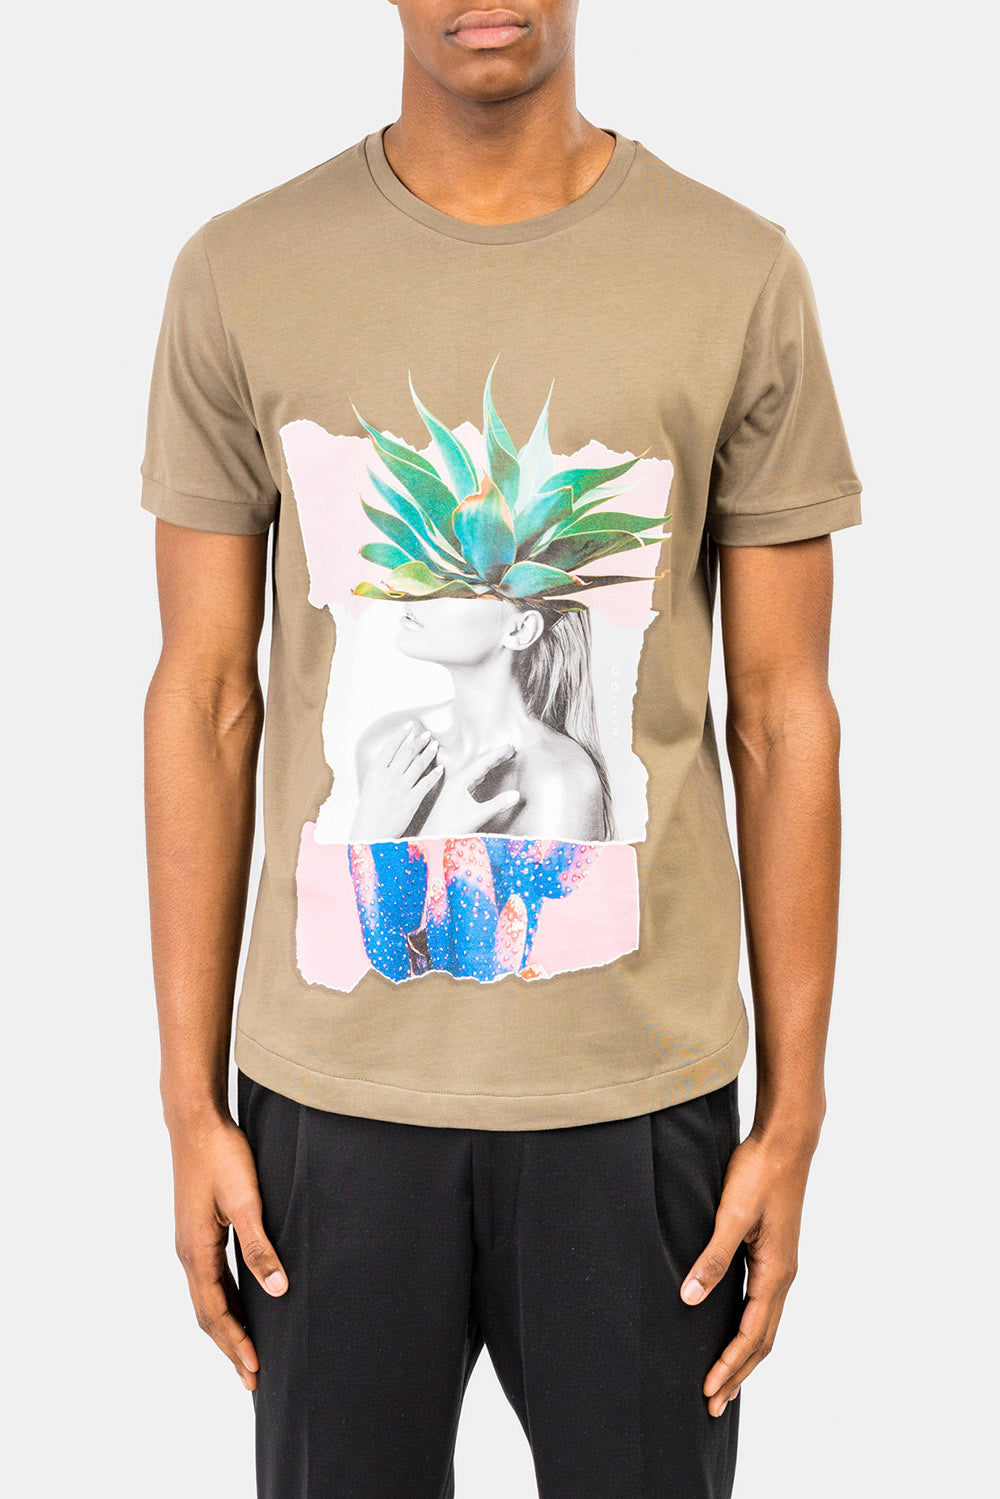 Cactus Girl Print T-shirt